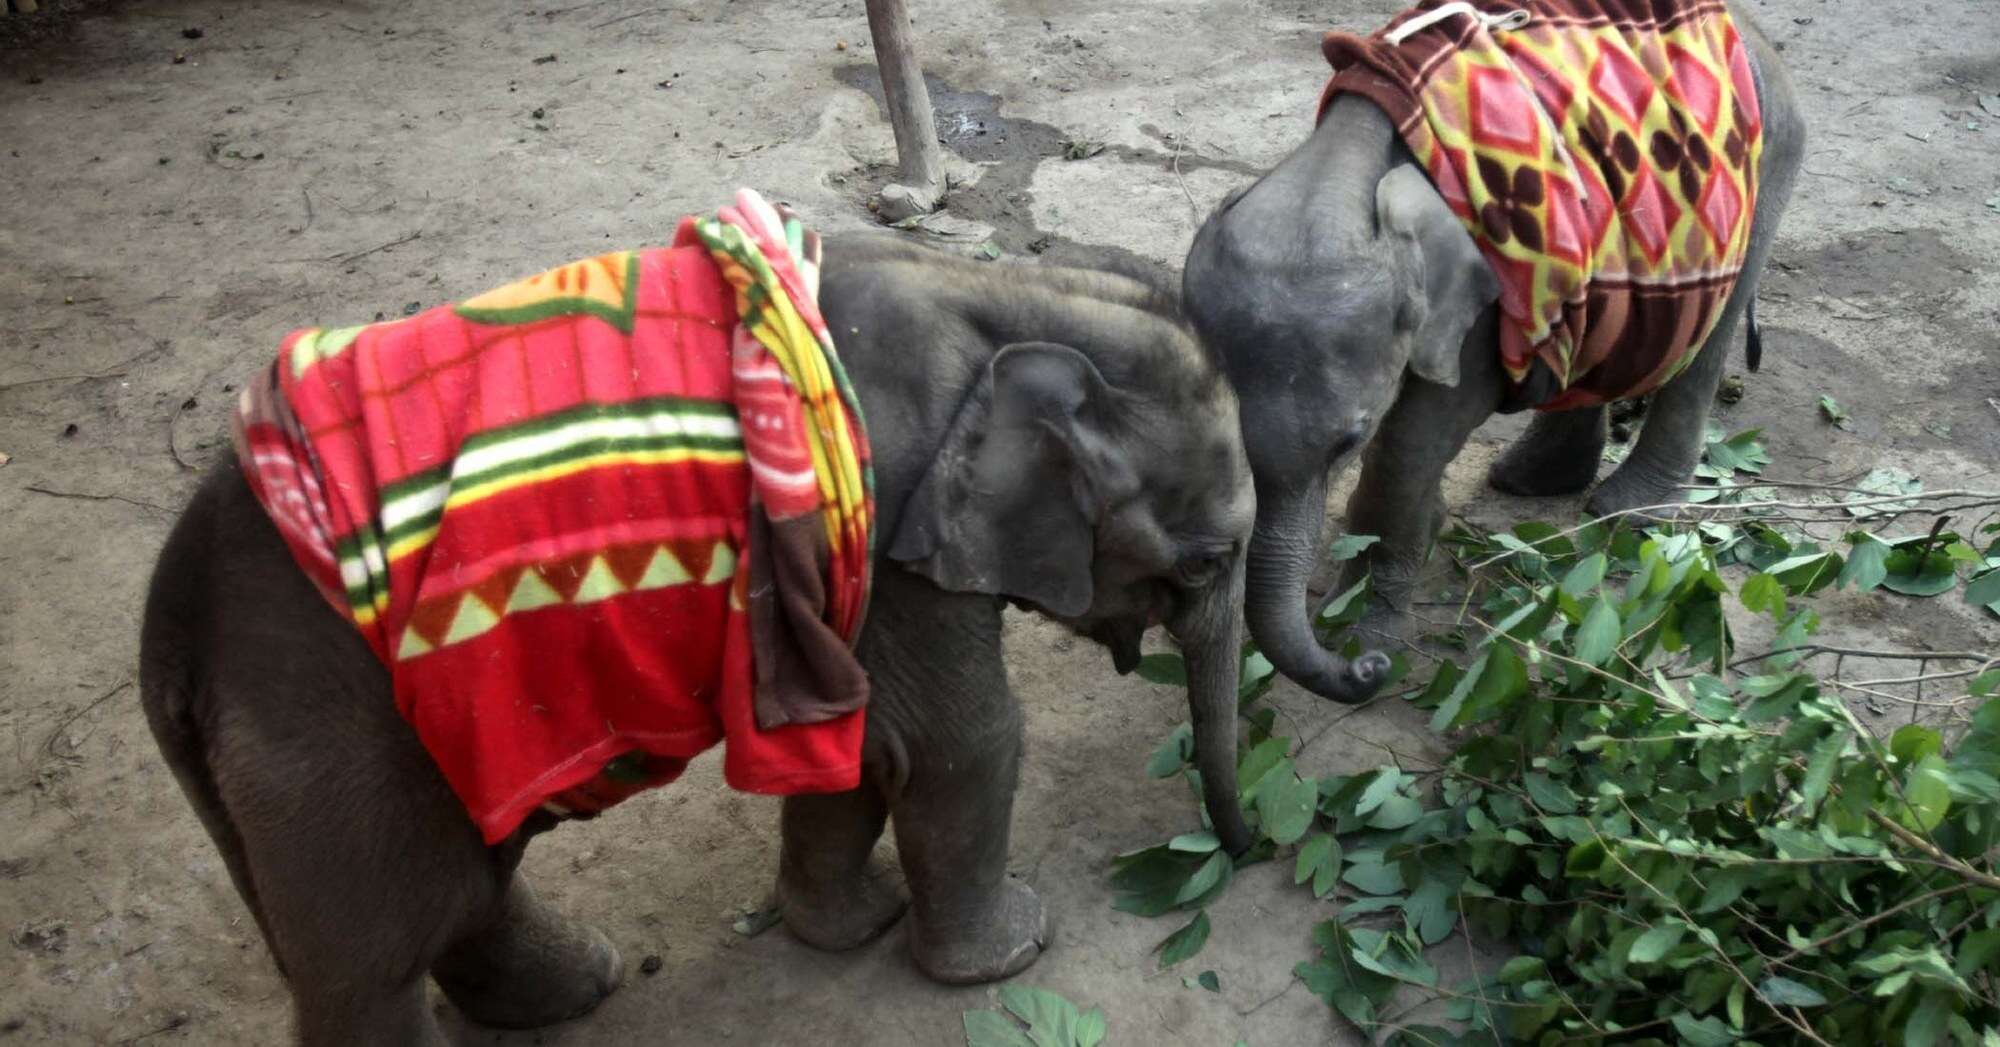 orphaned elephant calves bond at rescue center